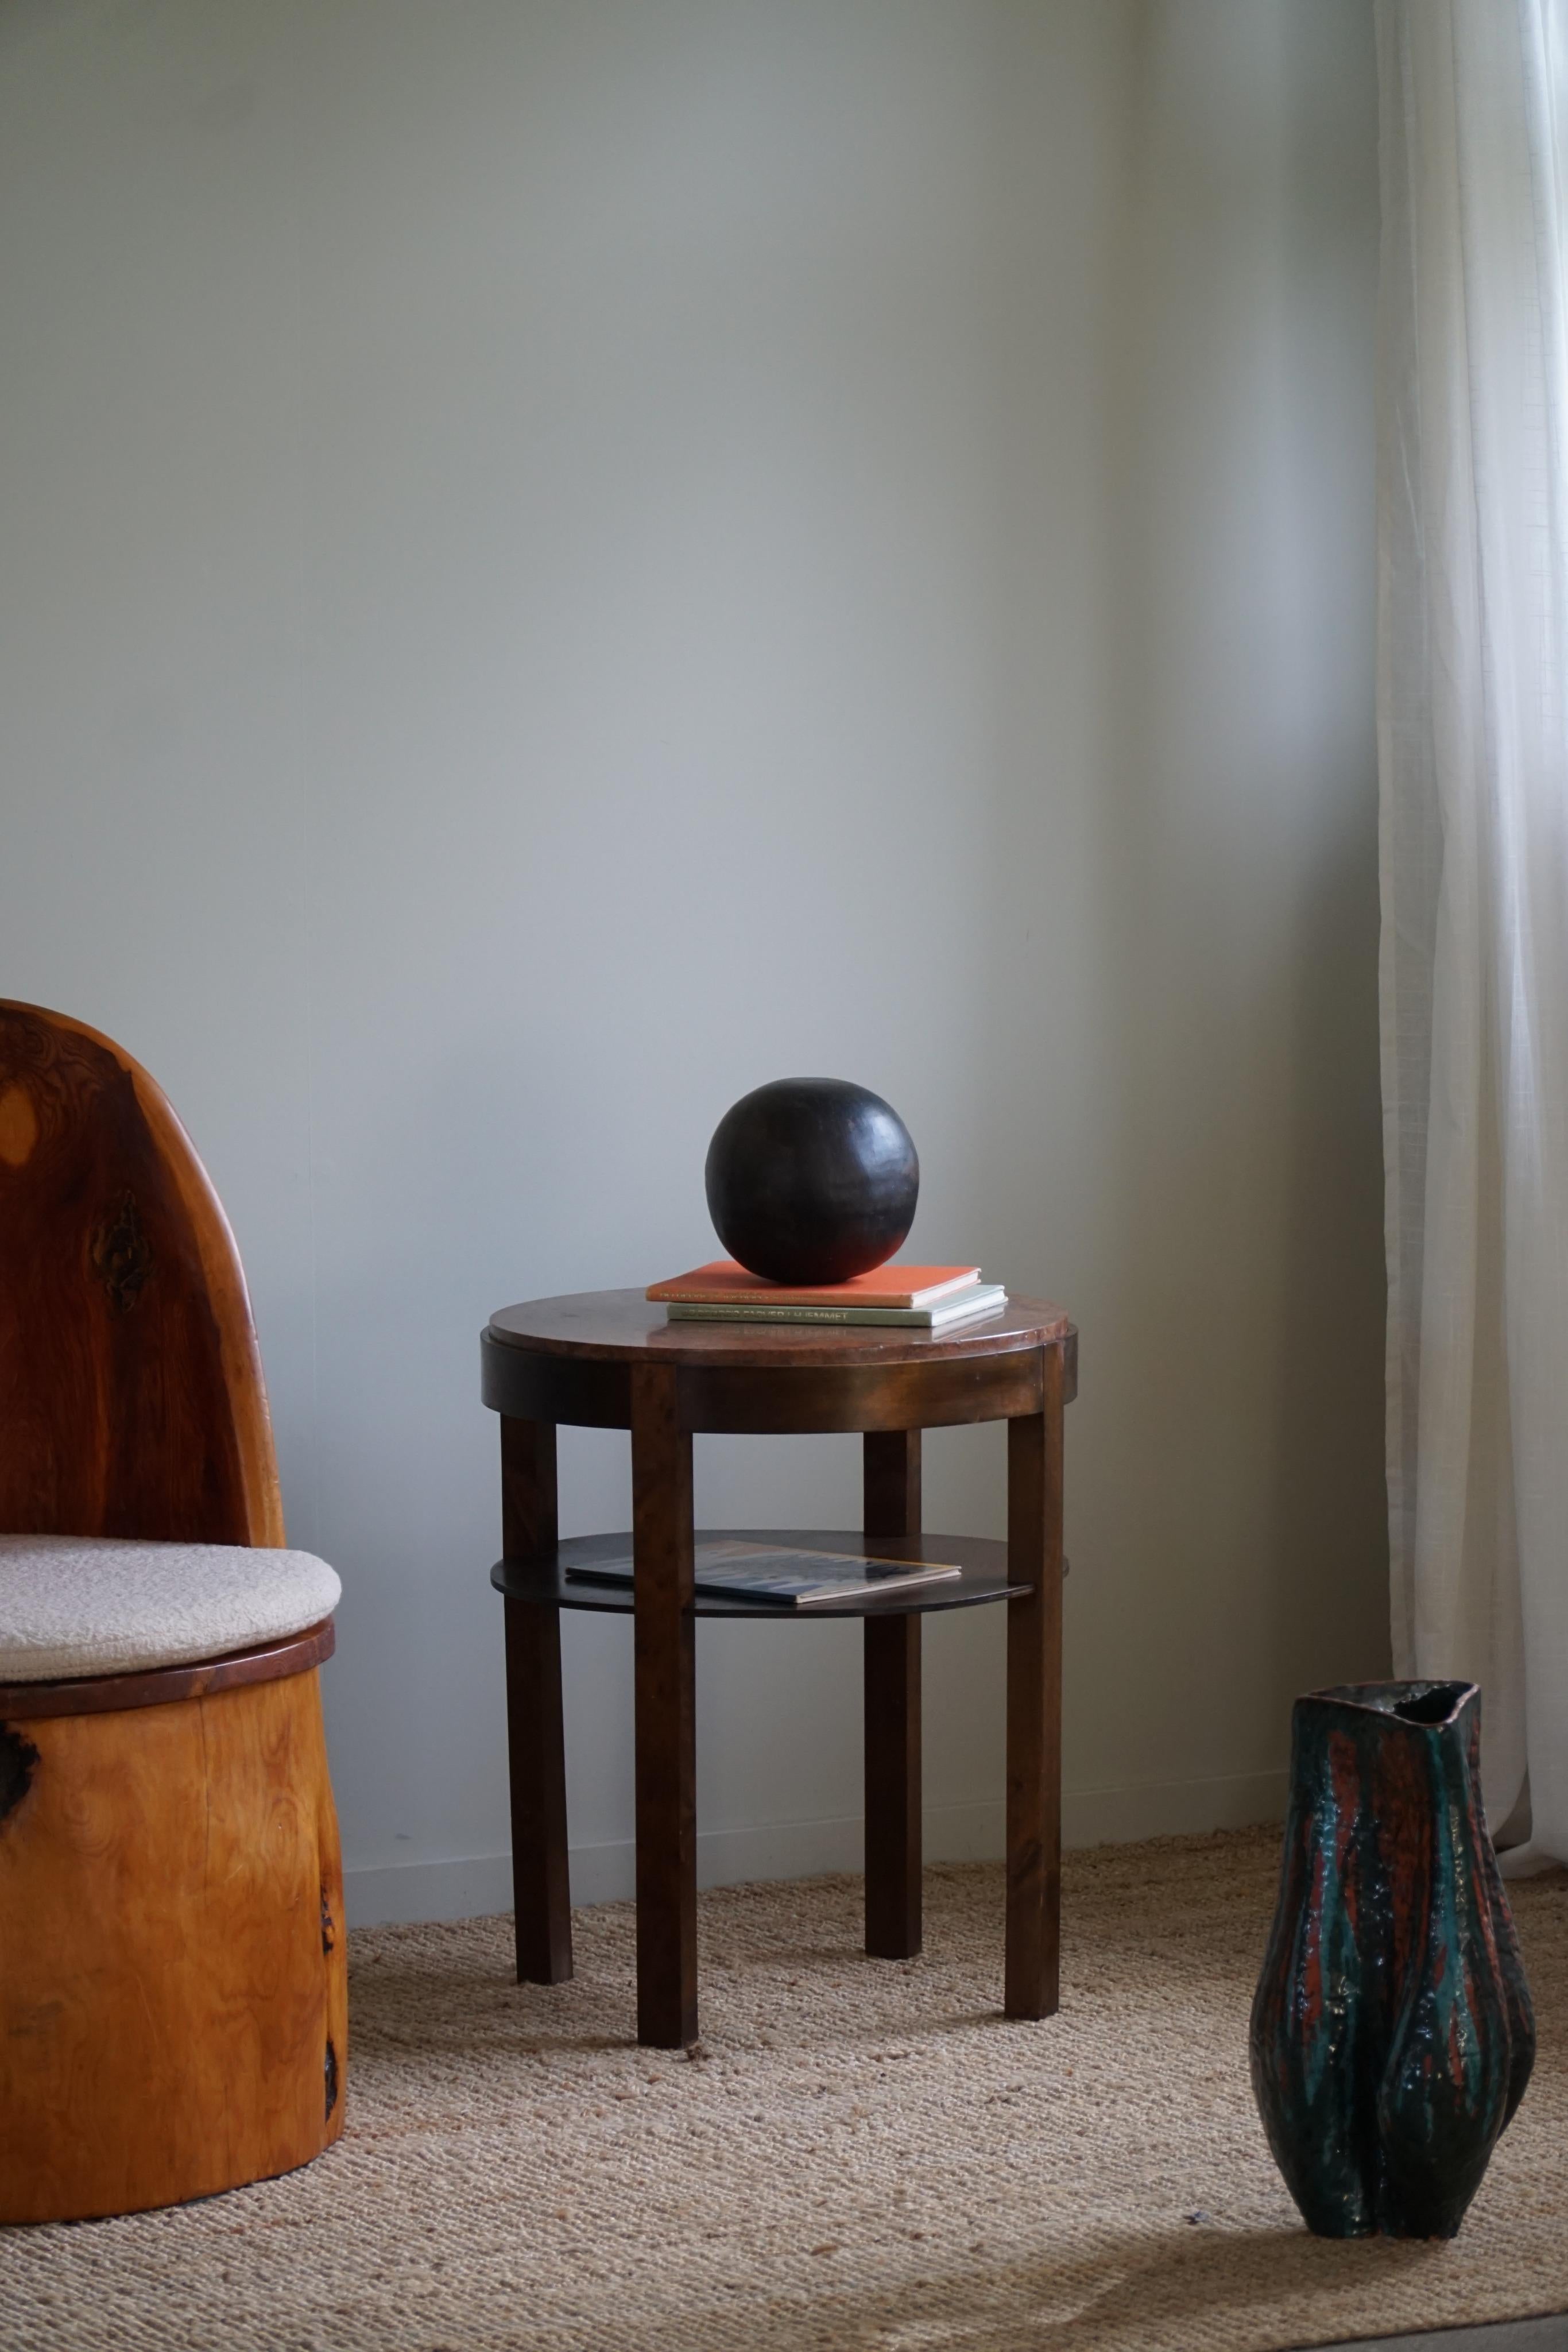 Ein eleganter Art Deco Beistelltisch / Sockel aus Buche mit einer exklusiven Marmorplatte. Hergestellt von einem dänischen Tischler in den 1940er Jahren.

Dieser charmante Vintage-Tisch passt zu vielen Einrichtungsstilen. Eine moderne, antike,